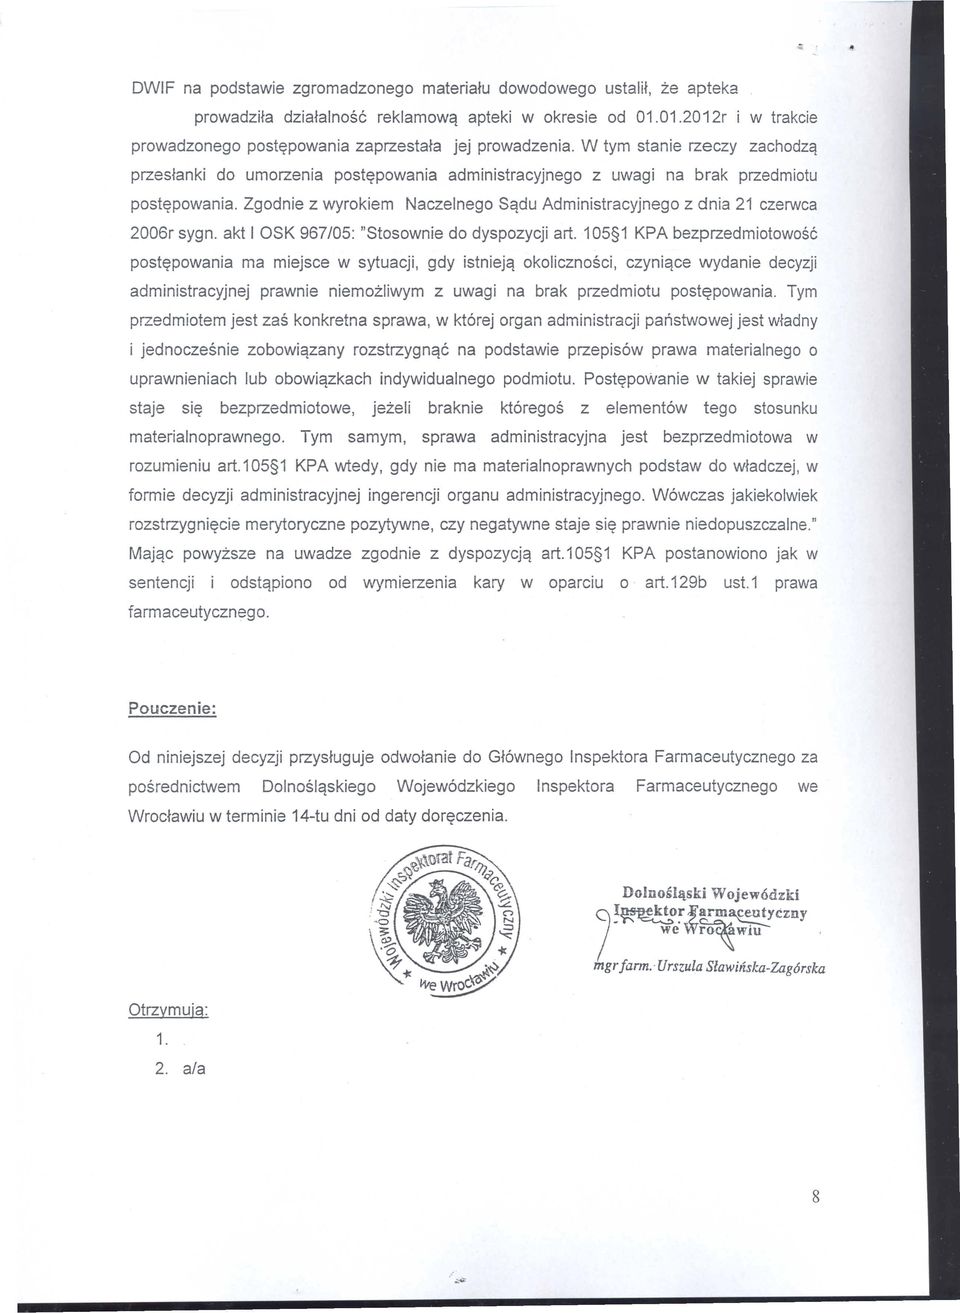 Zgodnie z wyrokiem Naczelnego Sqdu Administracyjnego z dnia 21 czerwca 2006r sygn. akt I OSK 967/05: "Stosownie do dyspozycji art.